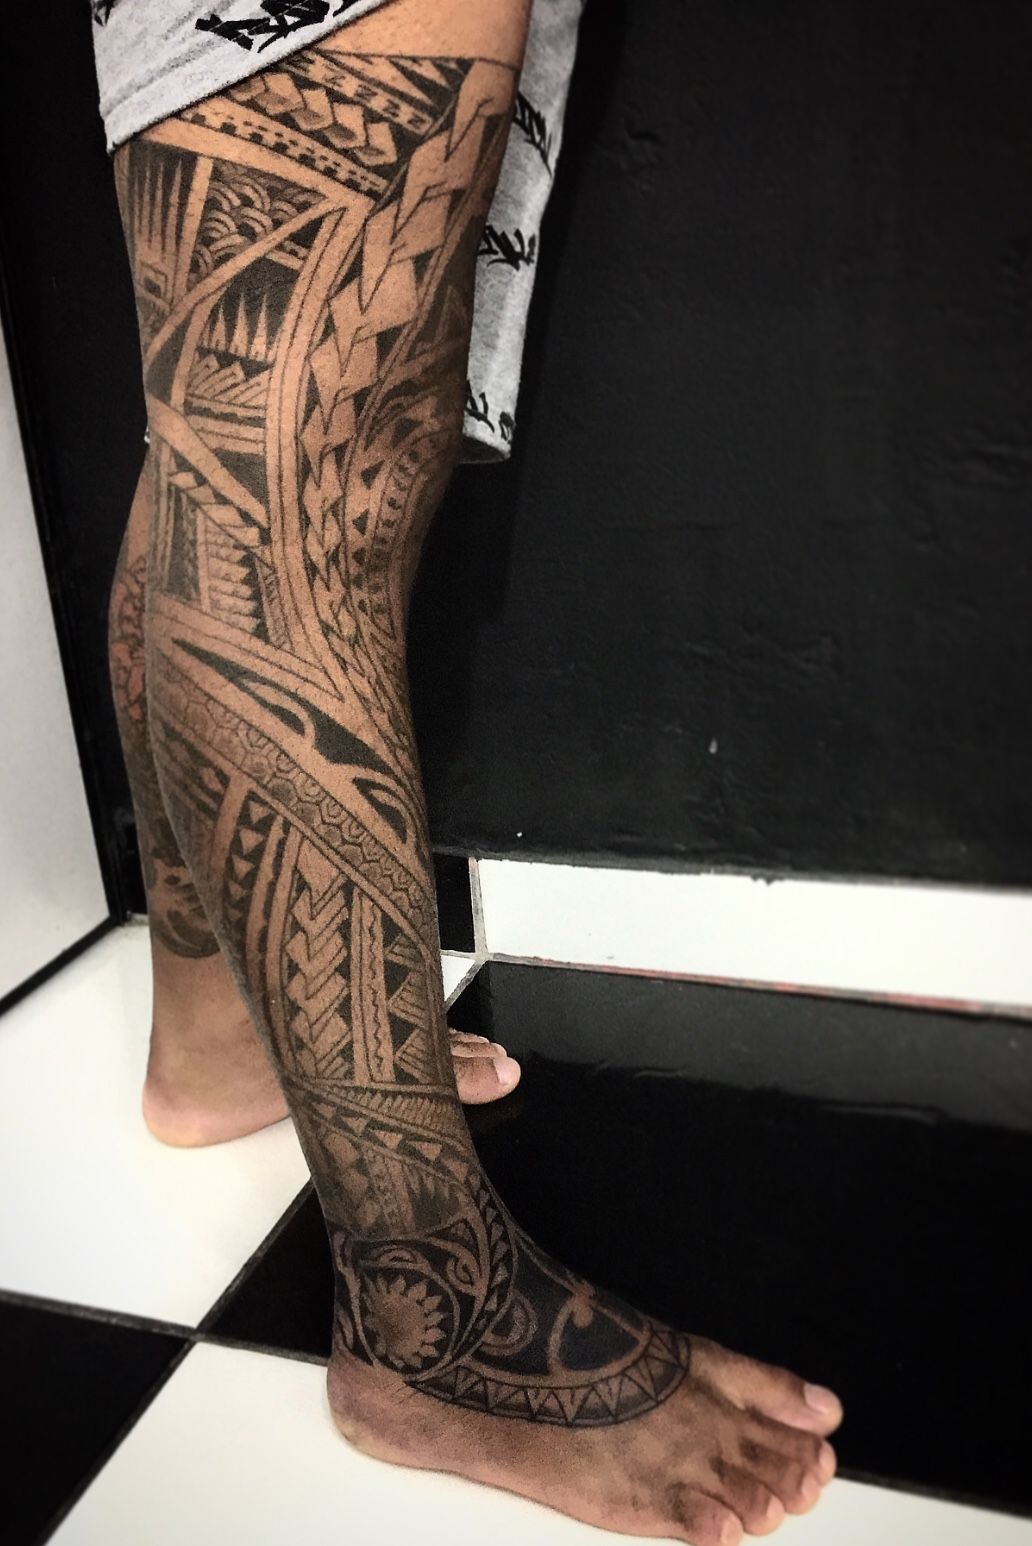 Buy 2 Tribal Temporary Tattoo Tribal Tattoo Polynesian Tattoo Maori Tattoo  Maori Fake Tattoo Leg Temporary Tattoo Men Arm Tattoo Large Tattoo Online  in India - Etsy